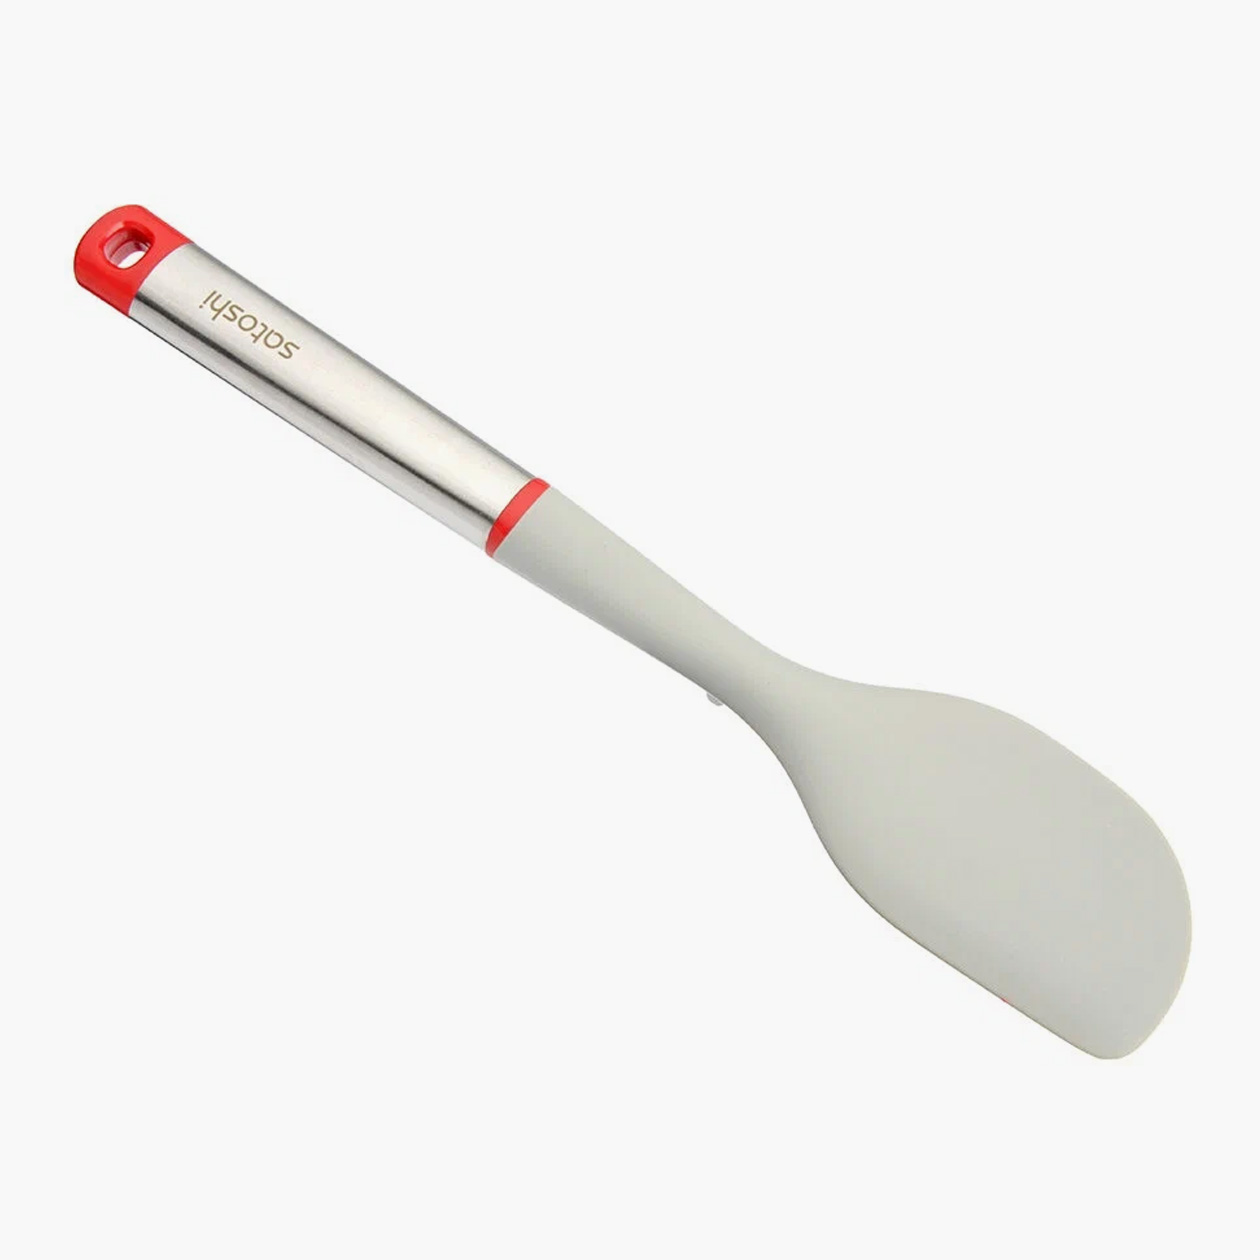 Подешевле: силиконовая лопатка с рукоятью из стали и пластика за 238 ₽. Источник: market.yandex.ru